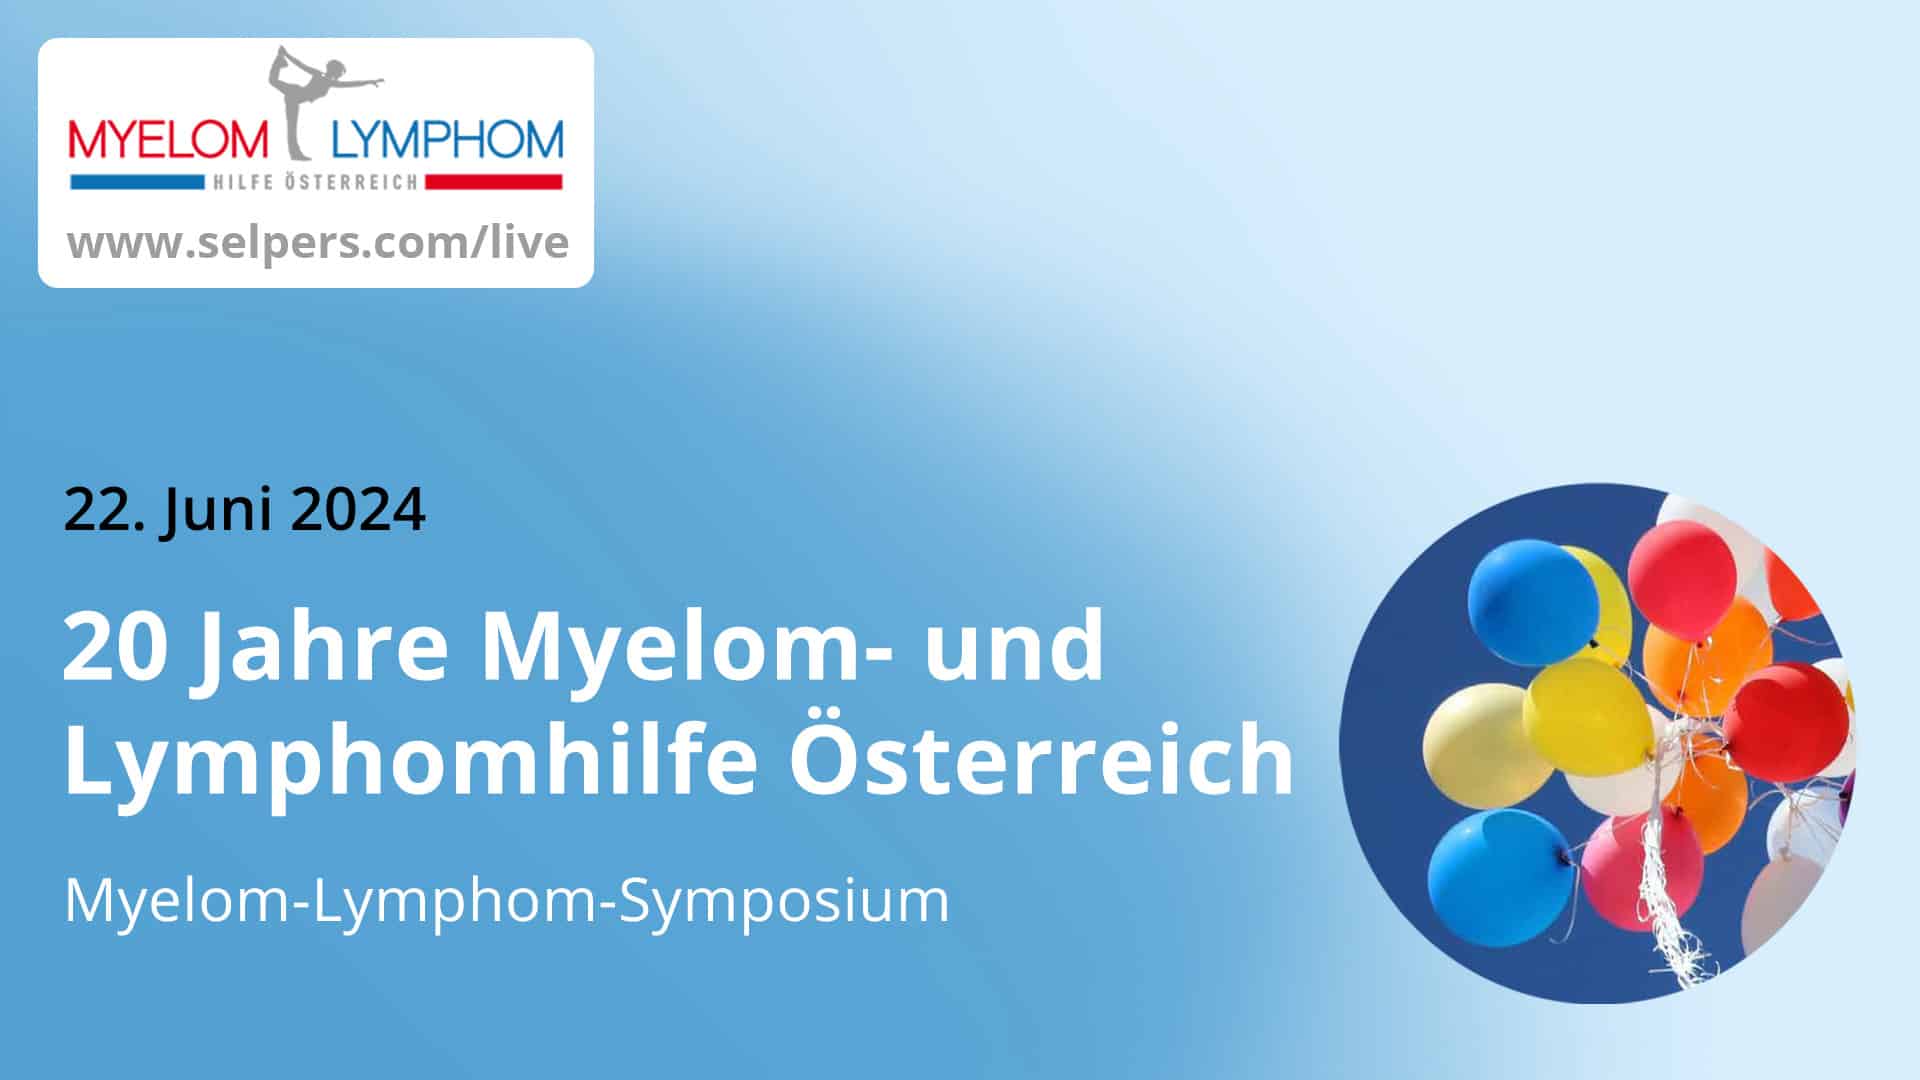 20 Jahre Myelom- und Lymphomhilfe Österreich